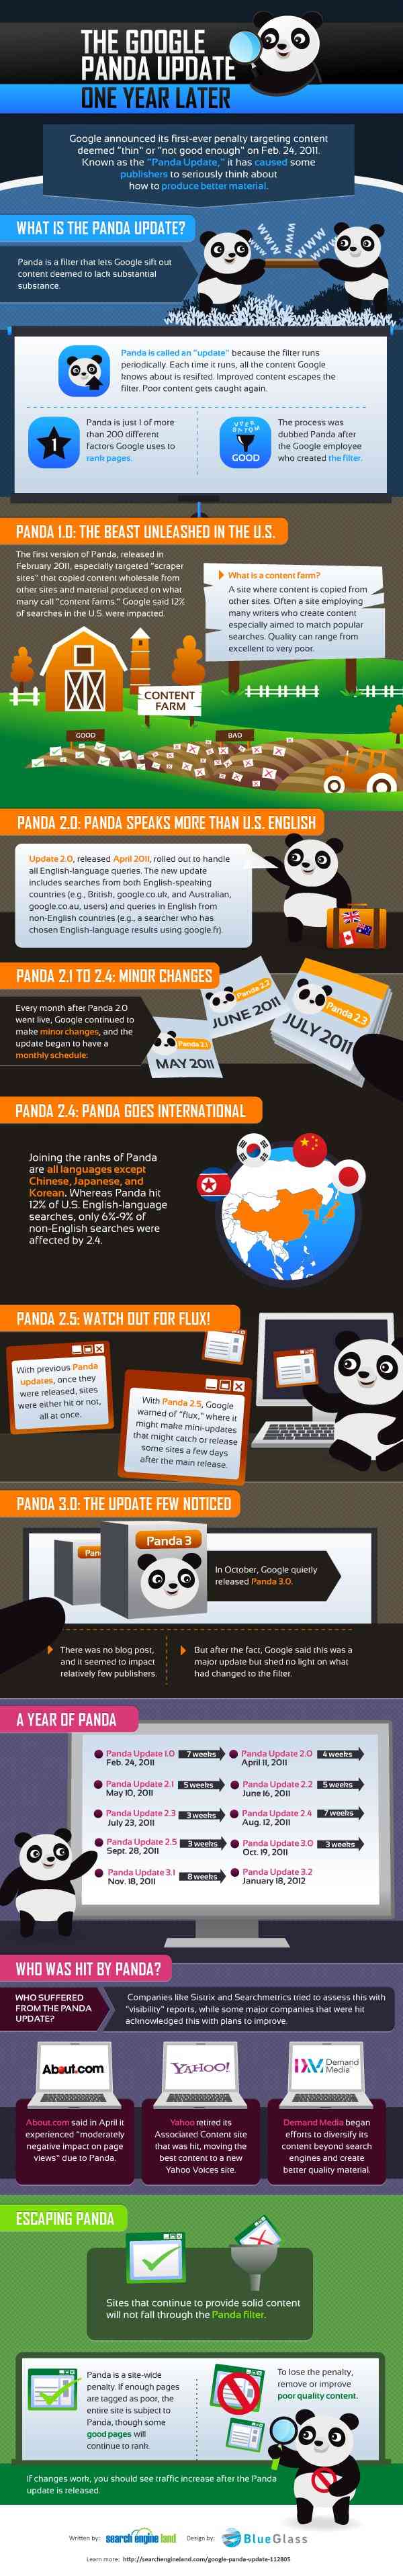 Google Panda mise a jour